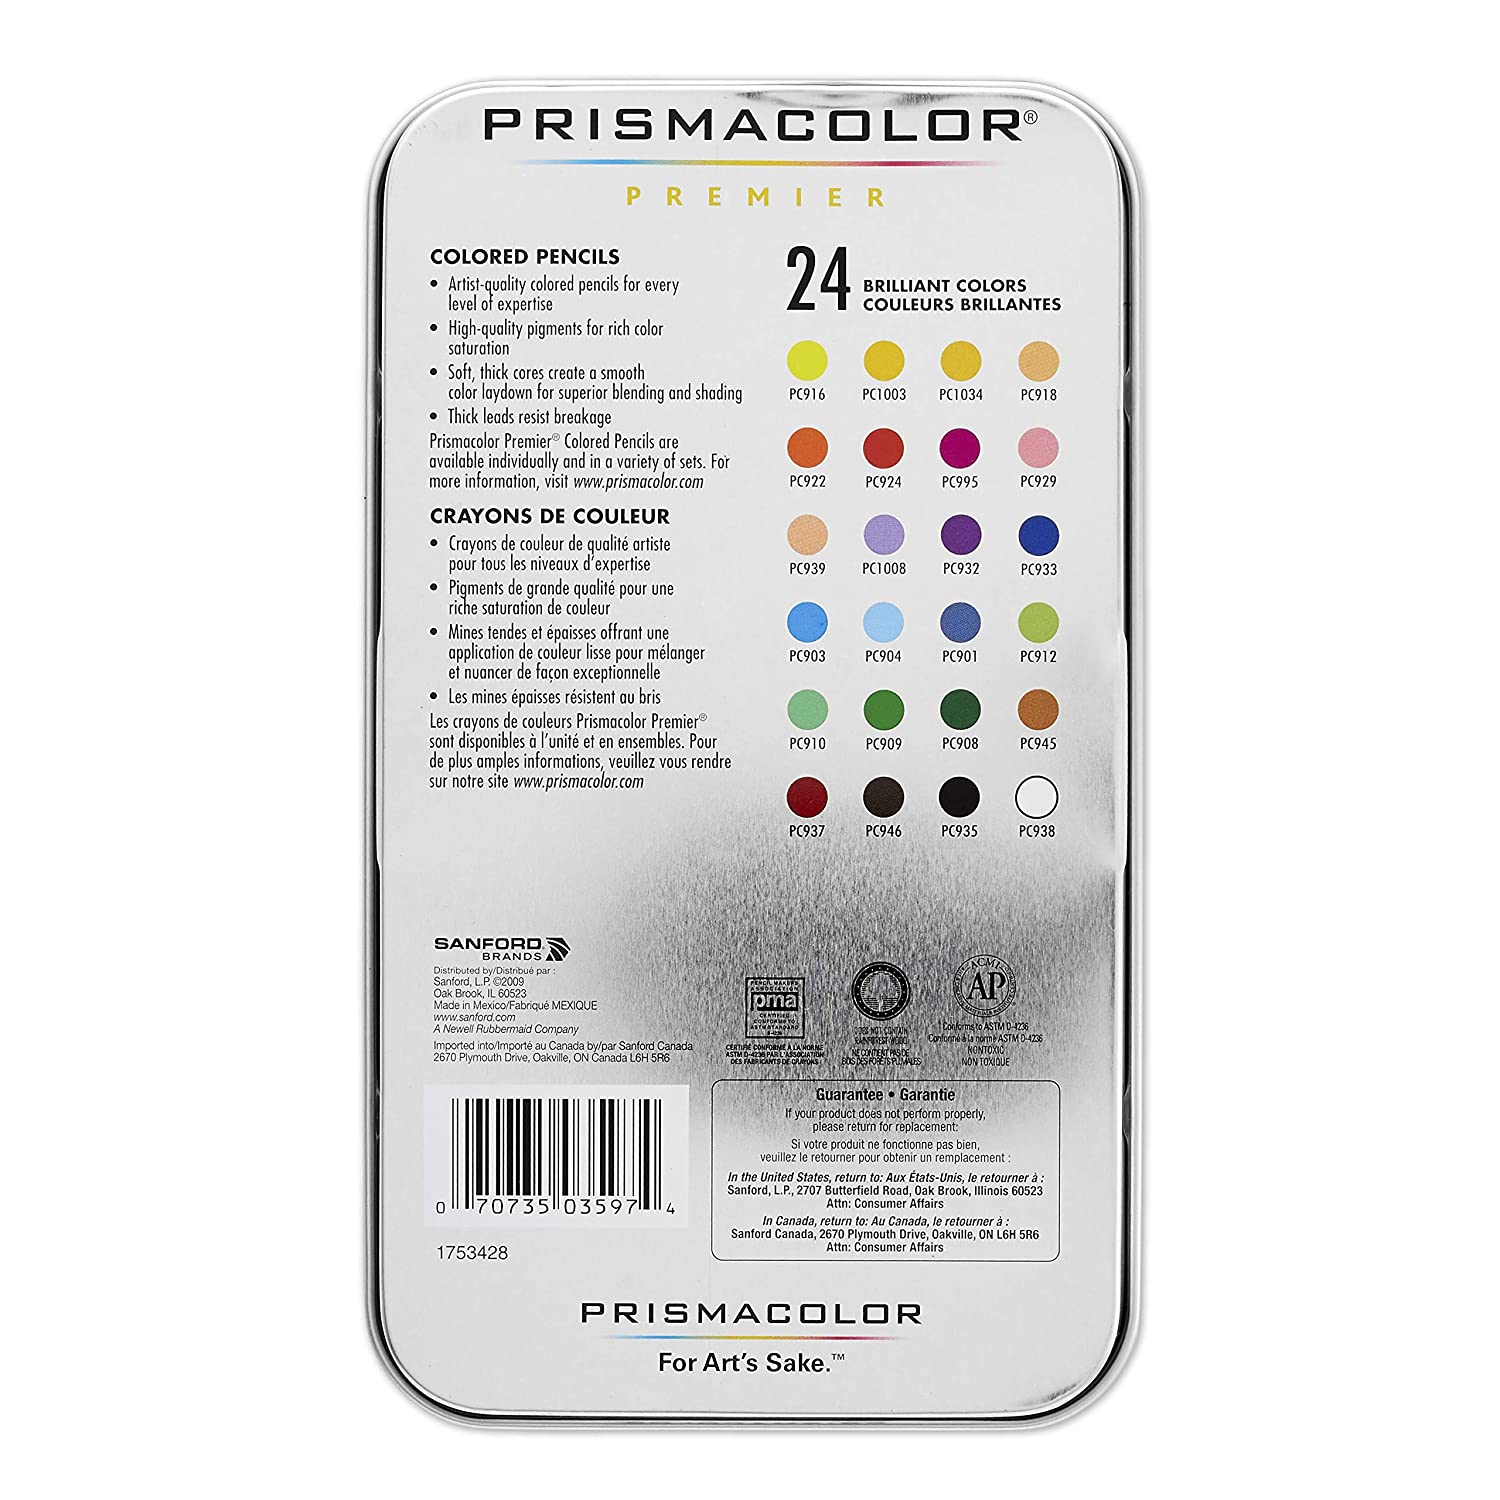 Prismacolor Premier Colored Pencil back part